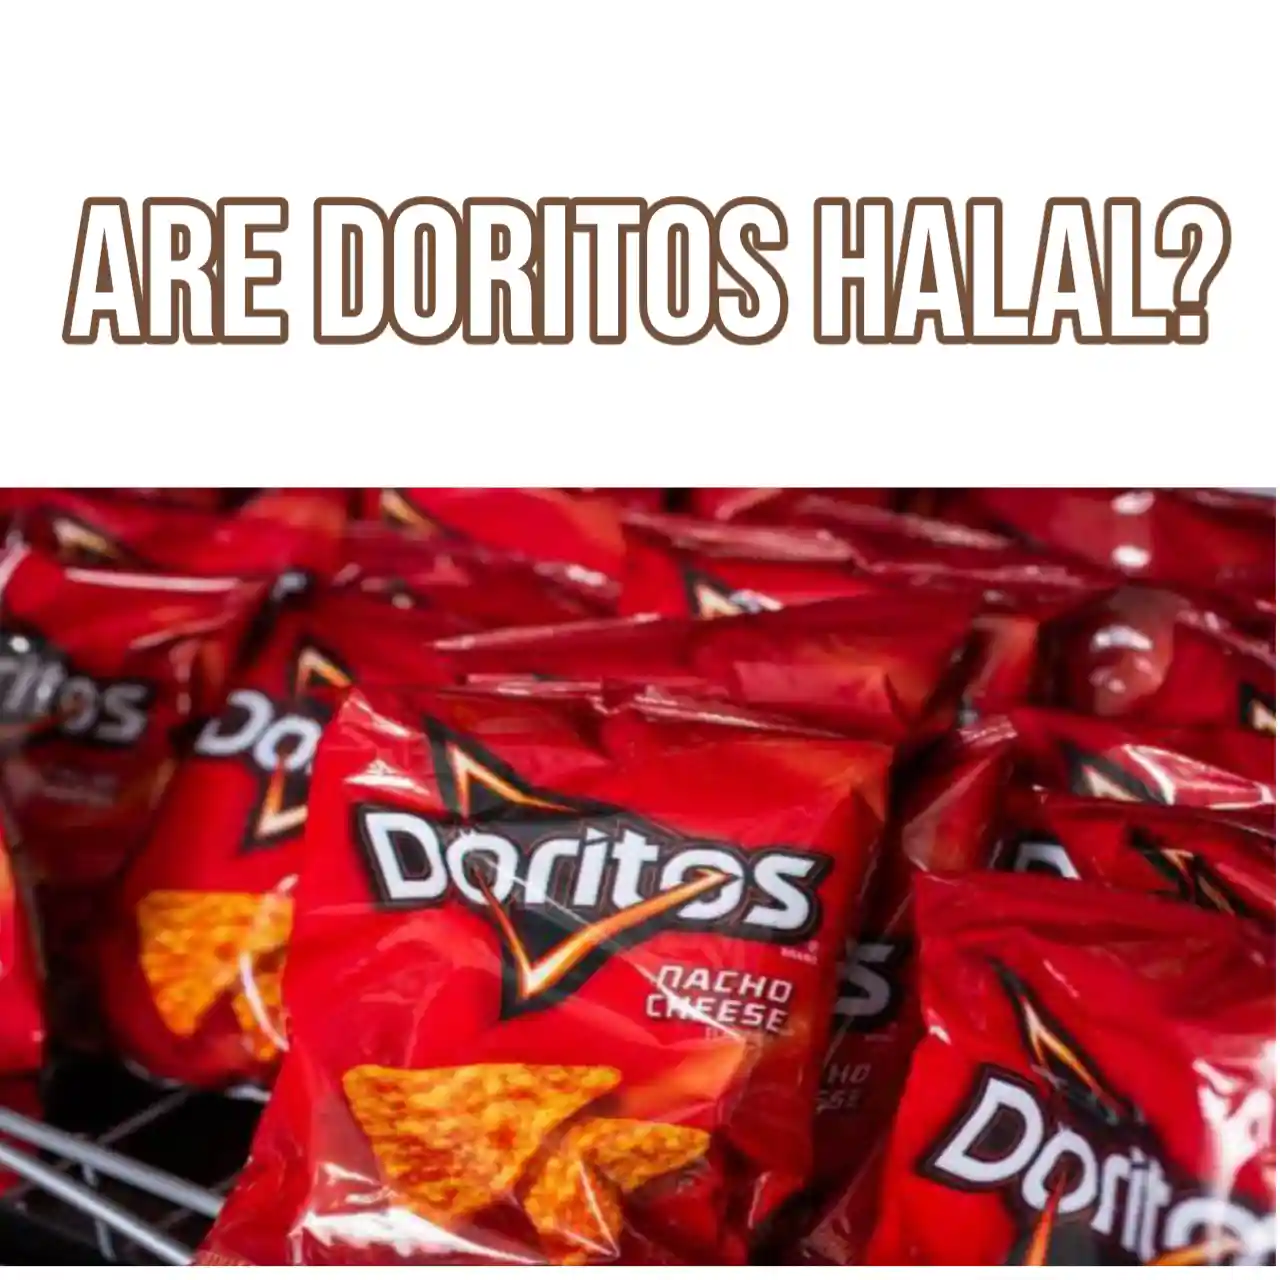 Are Doritos Halal